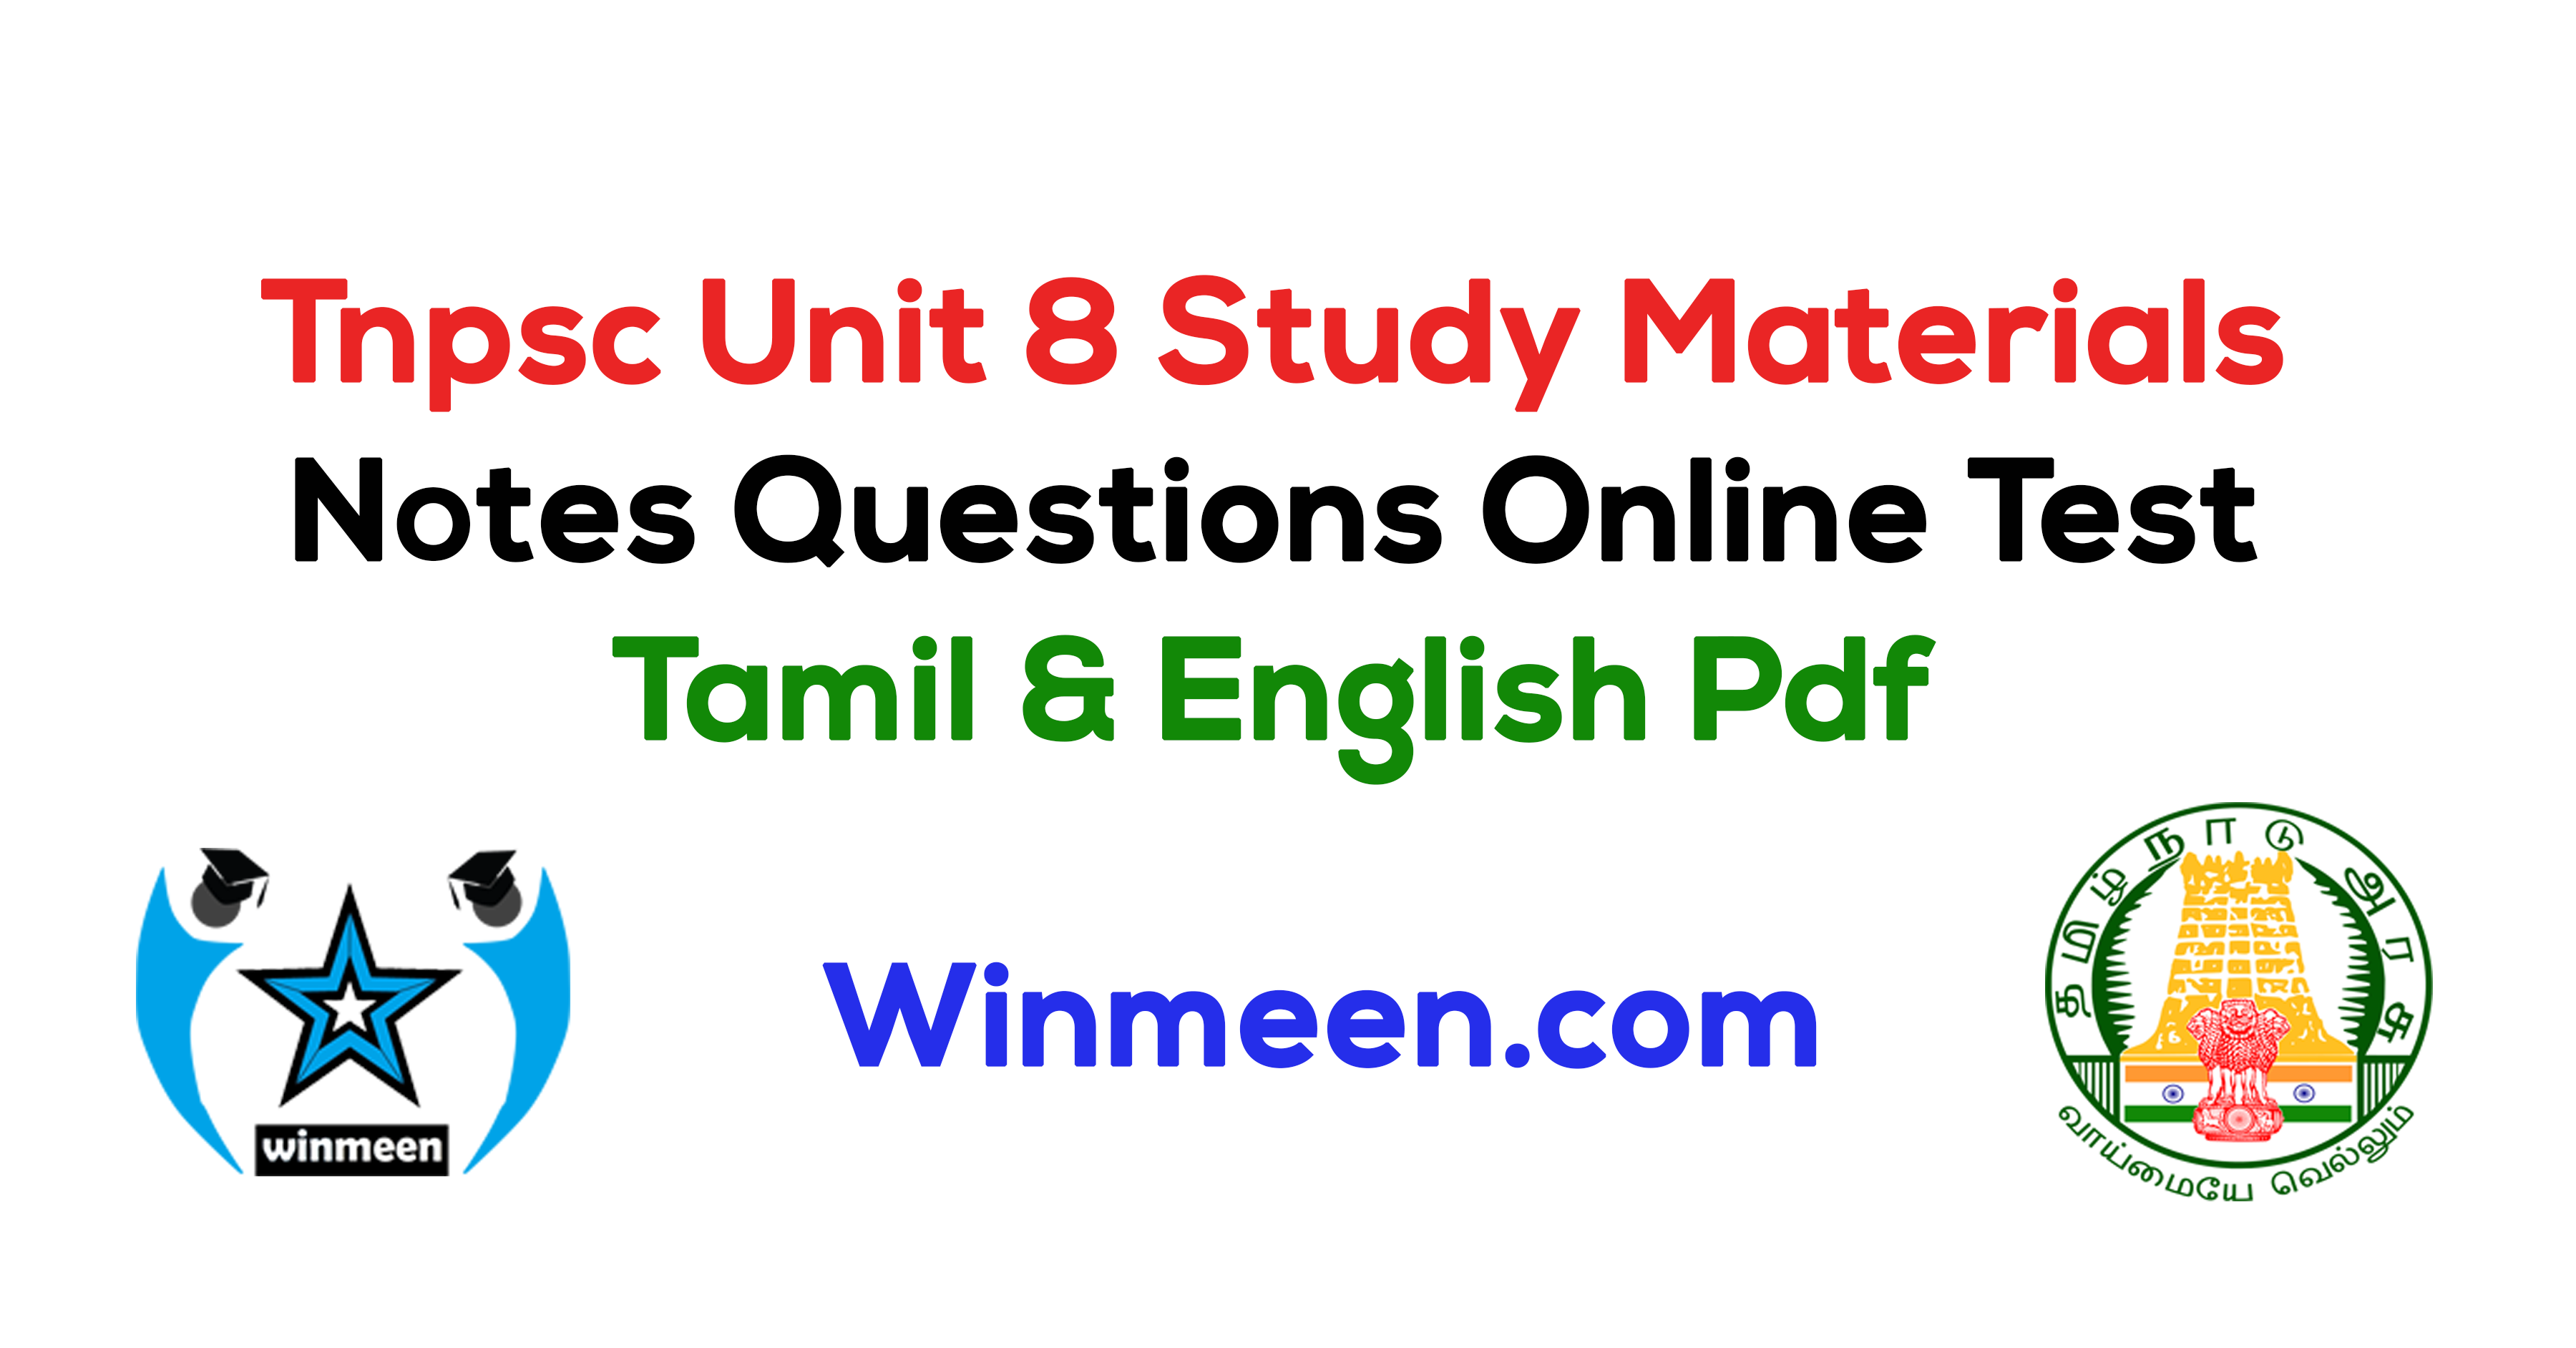 lcm-hcf-tnpsc-tnpsc-aptitude-in-tamil-tnpsc-mental-ability-tnpsc-2020-tnpsc-exam-youtube